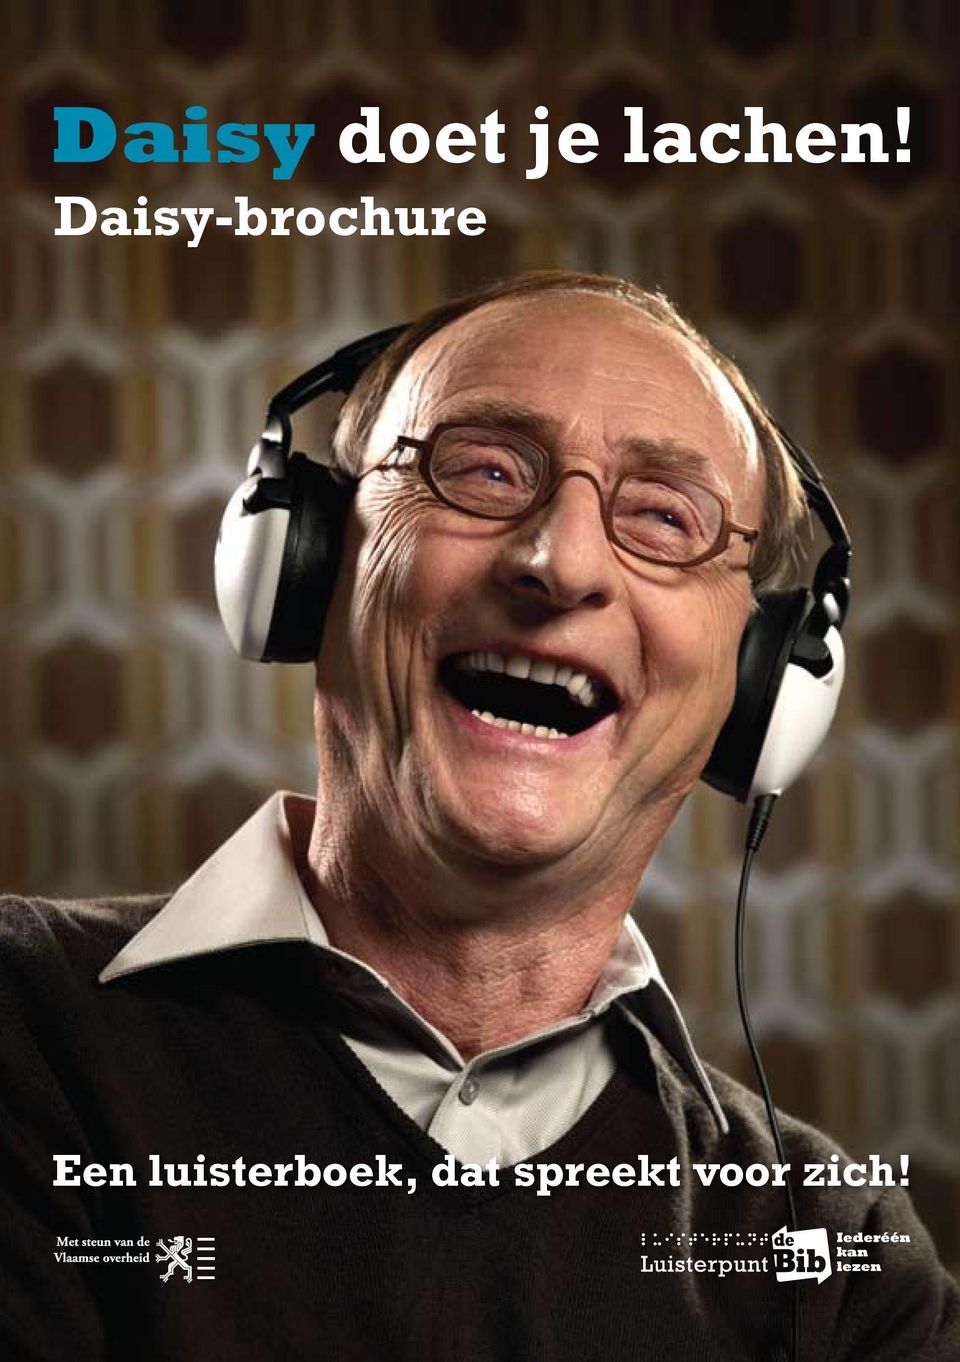 Daisy-brochure Een